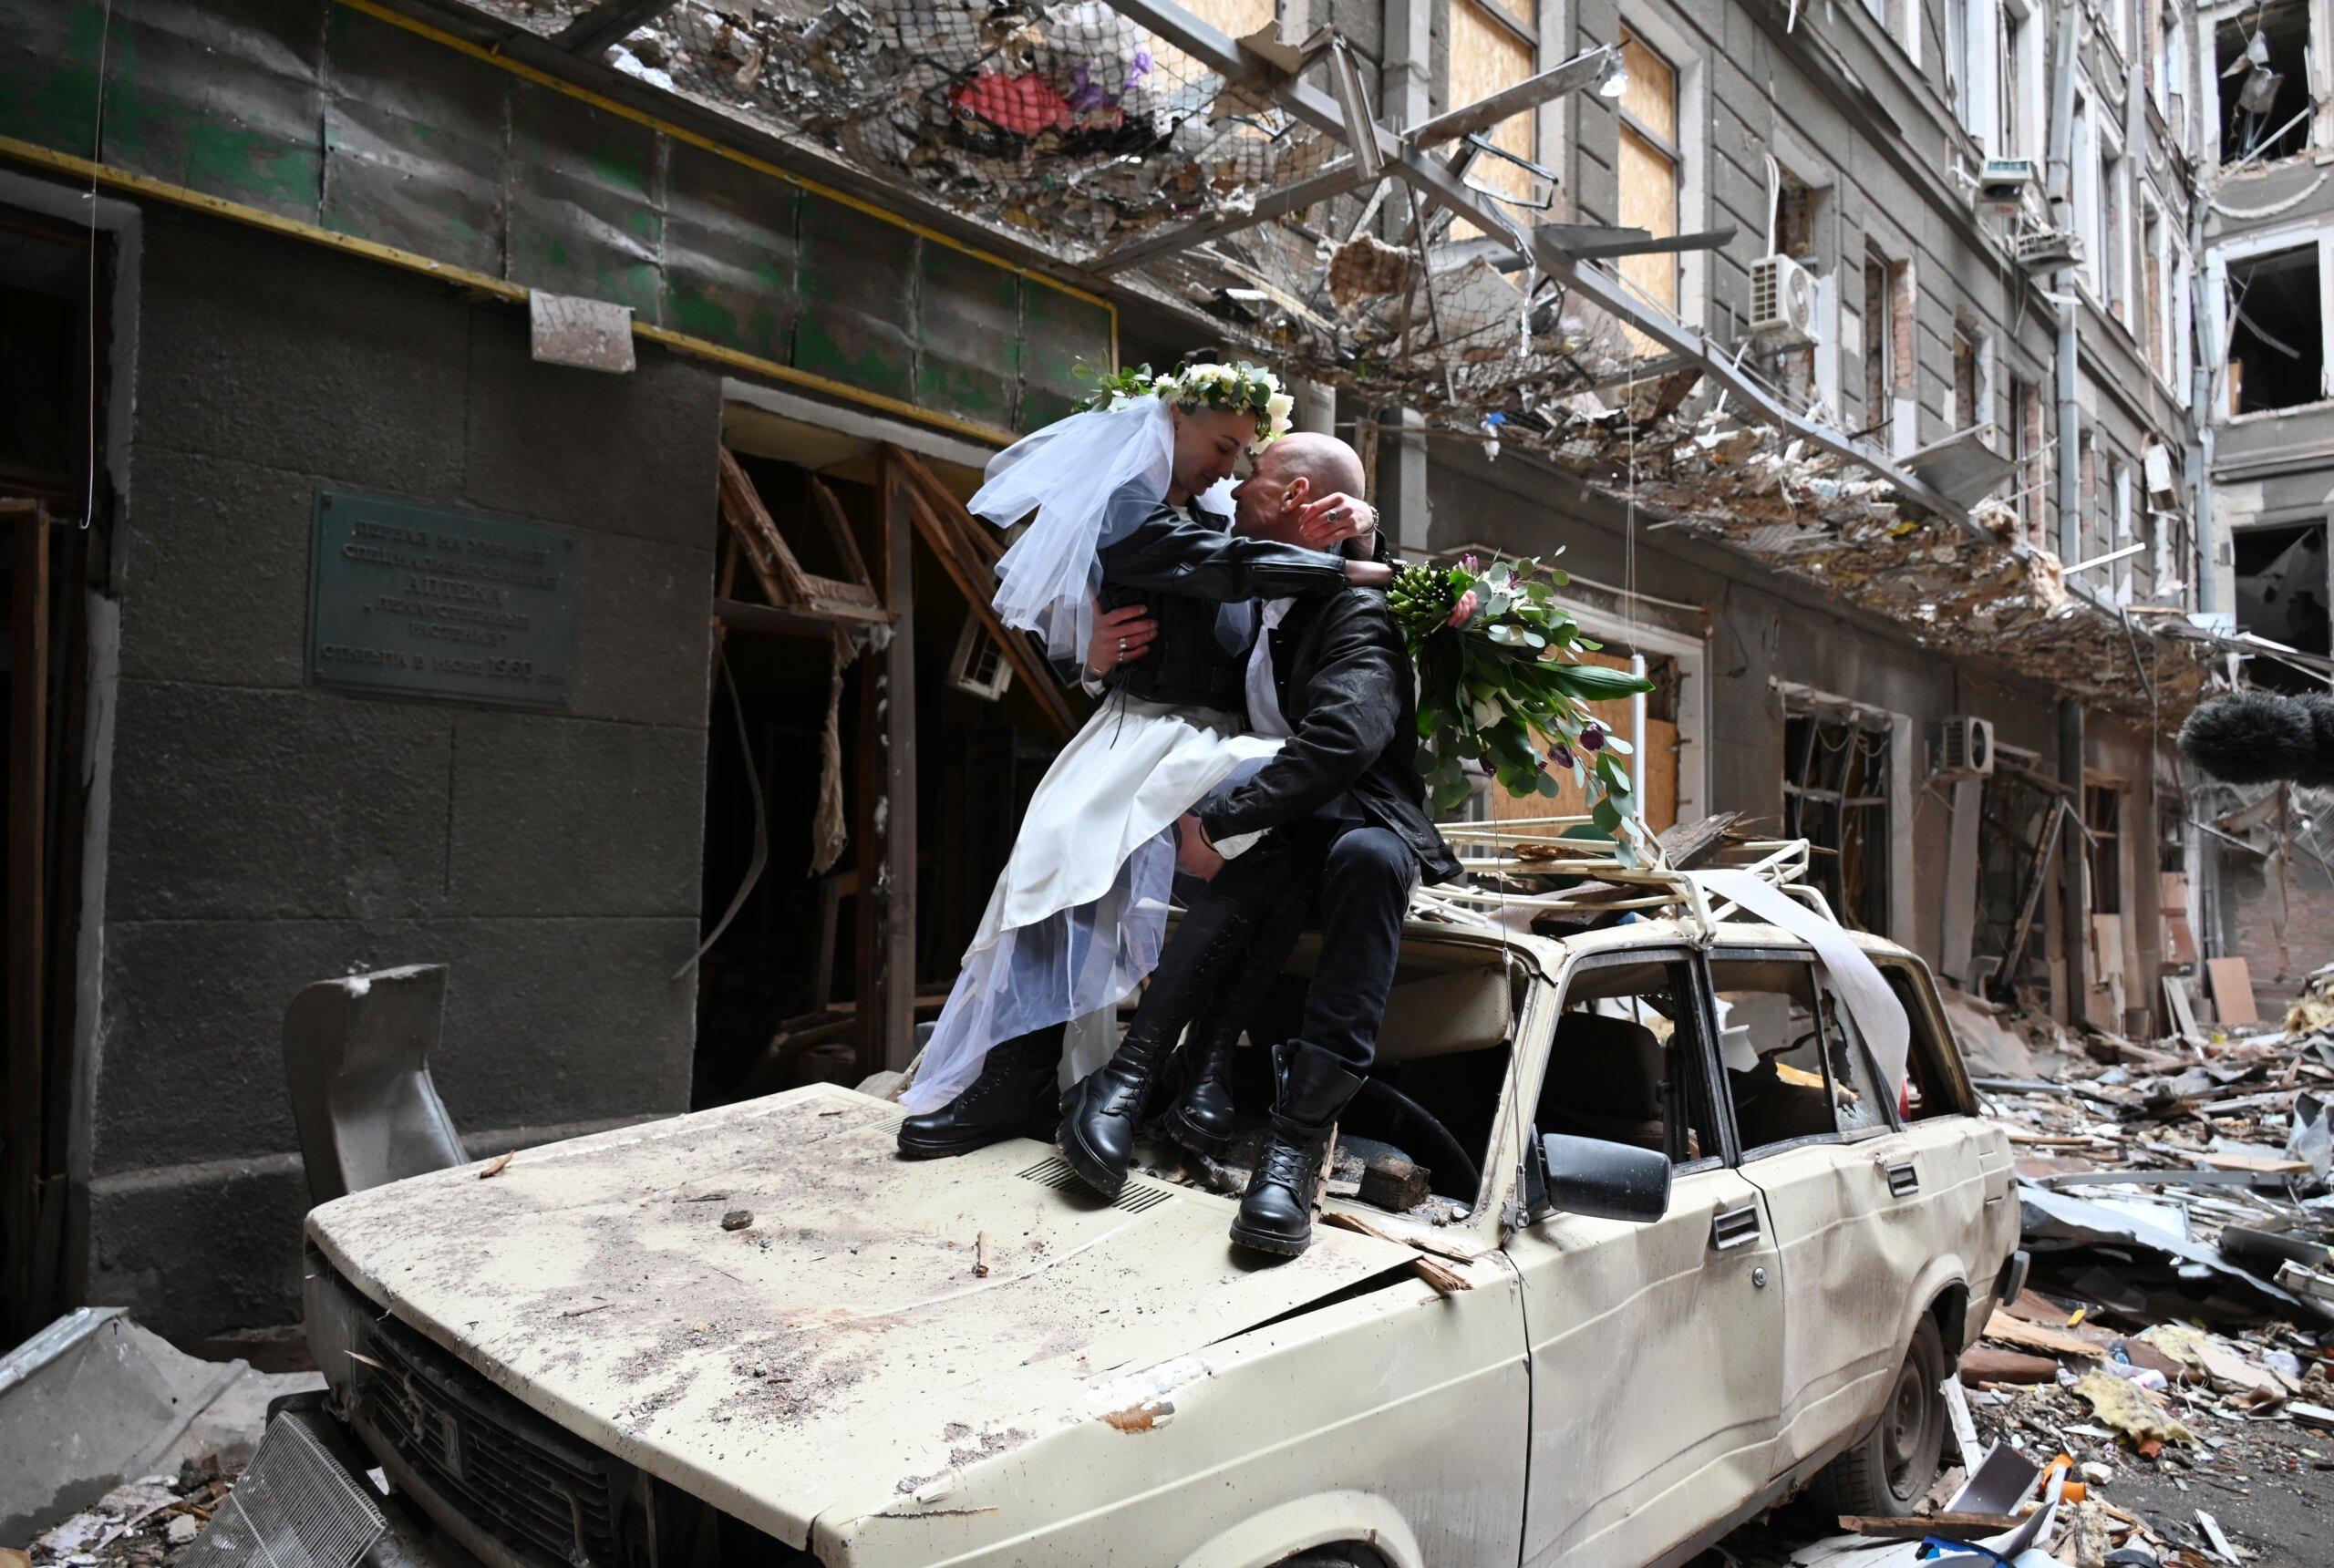 nowożeńcy pozują na wraku samochodu w zbombardowanym budynku